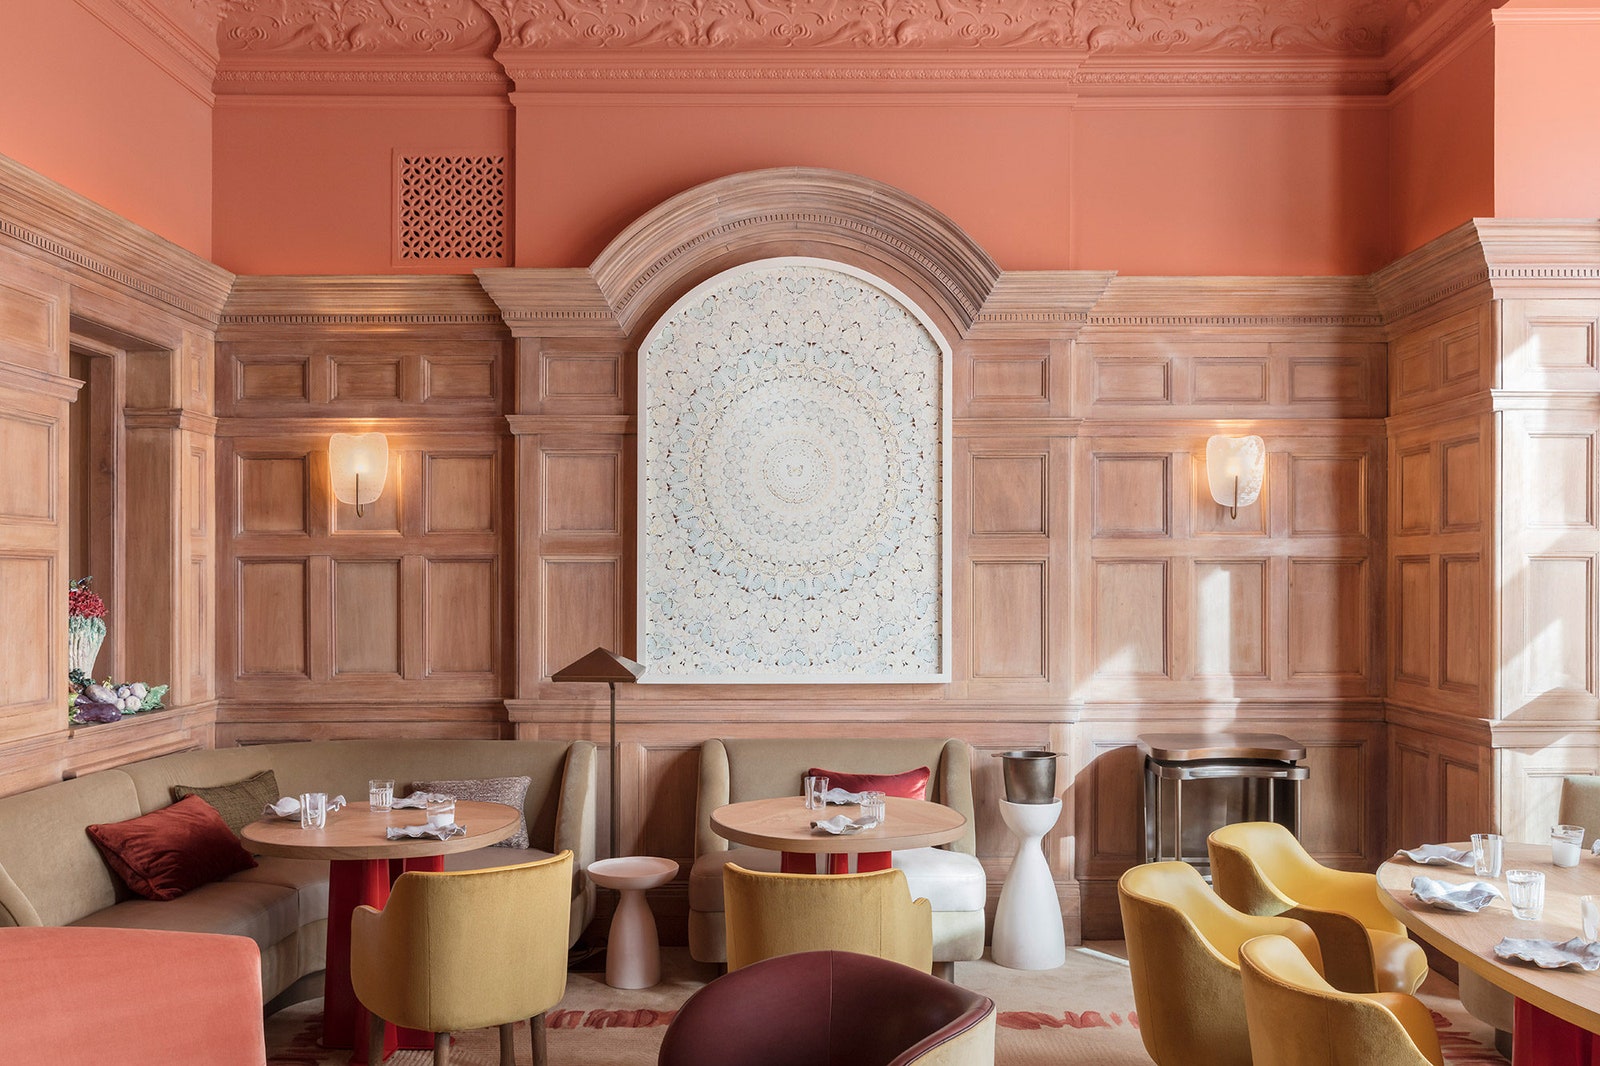 Ресторан Hlène Darroze в лондонском отеле The Connaught.